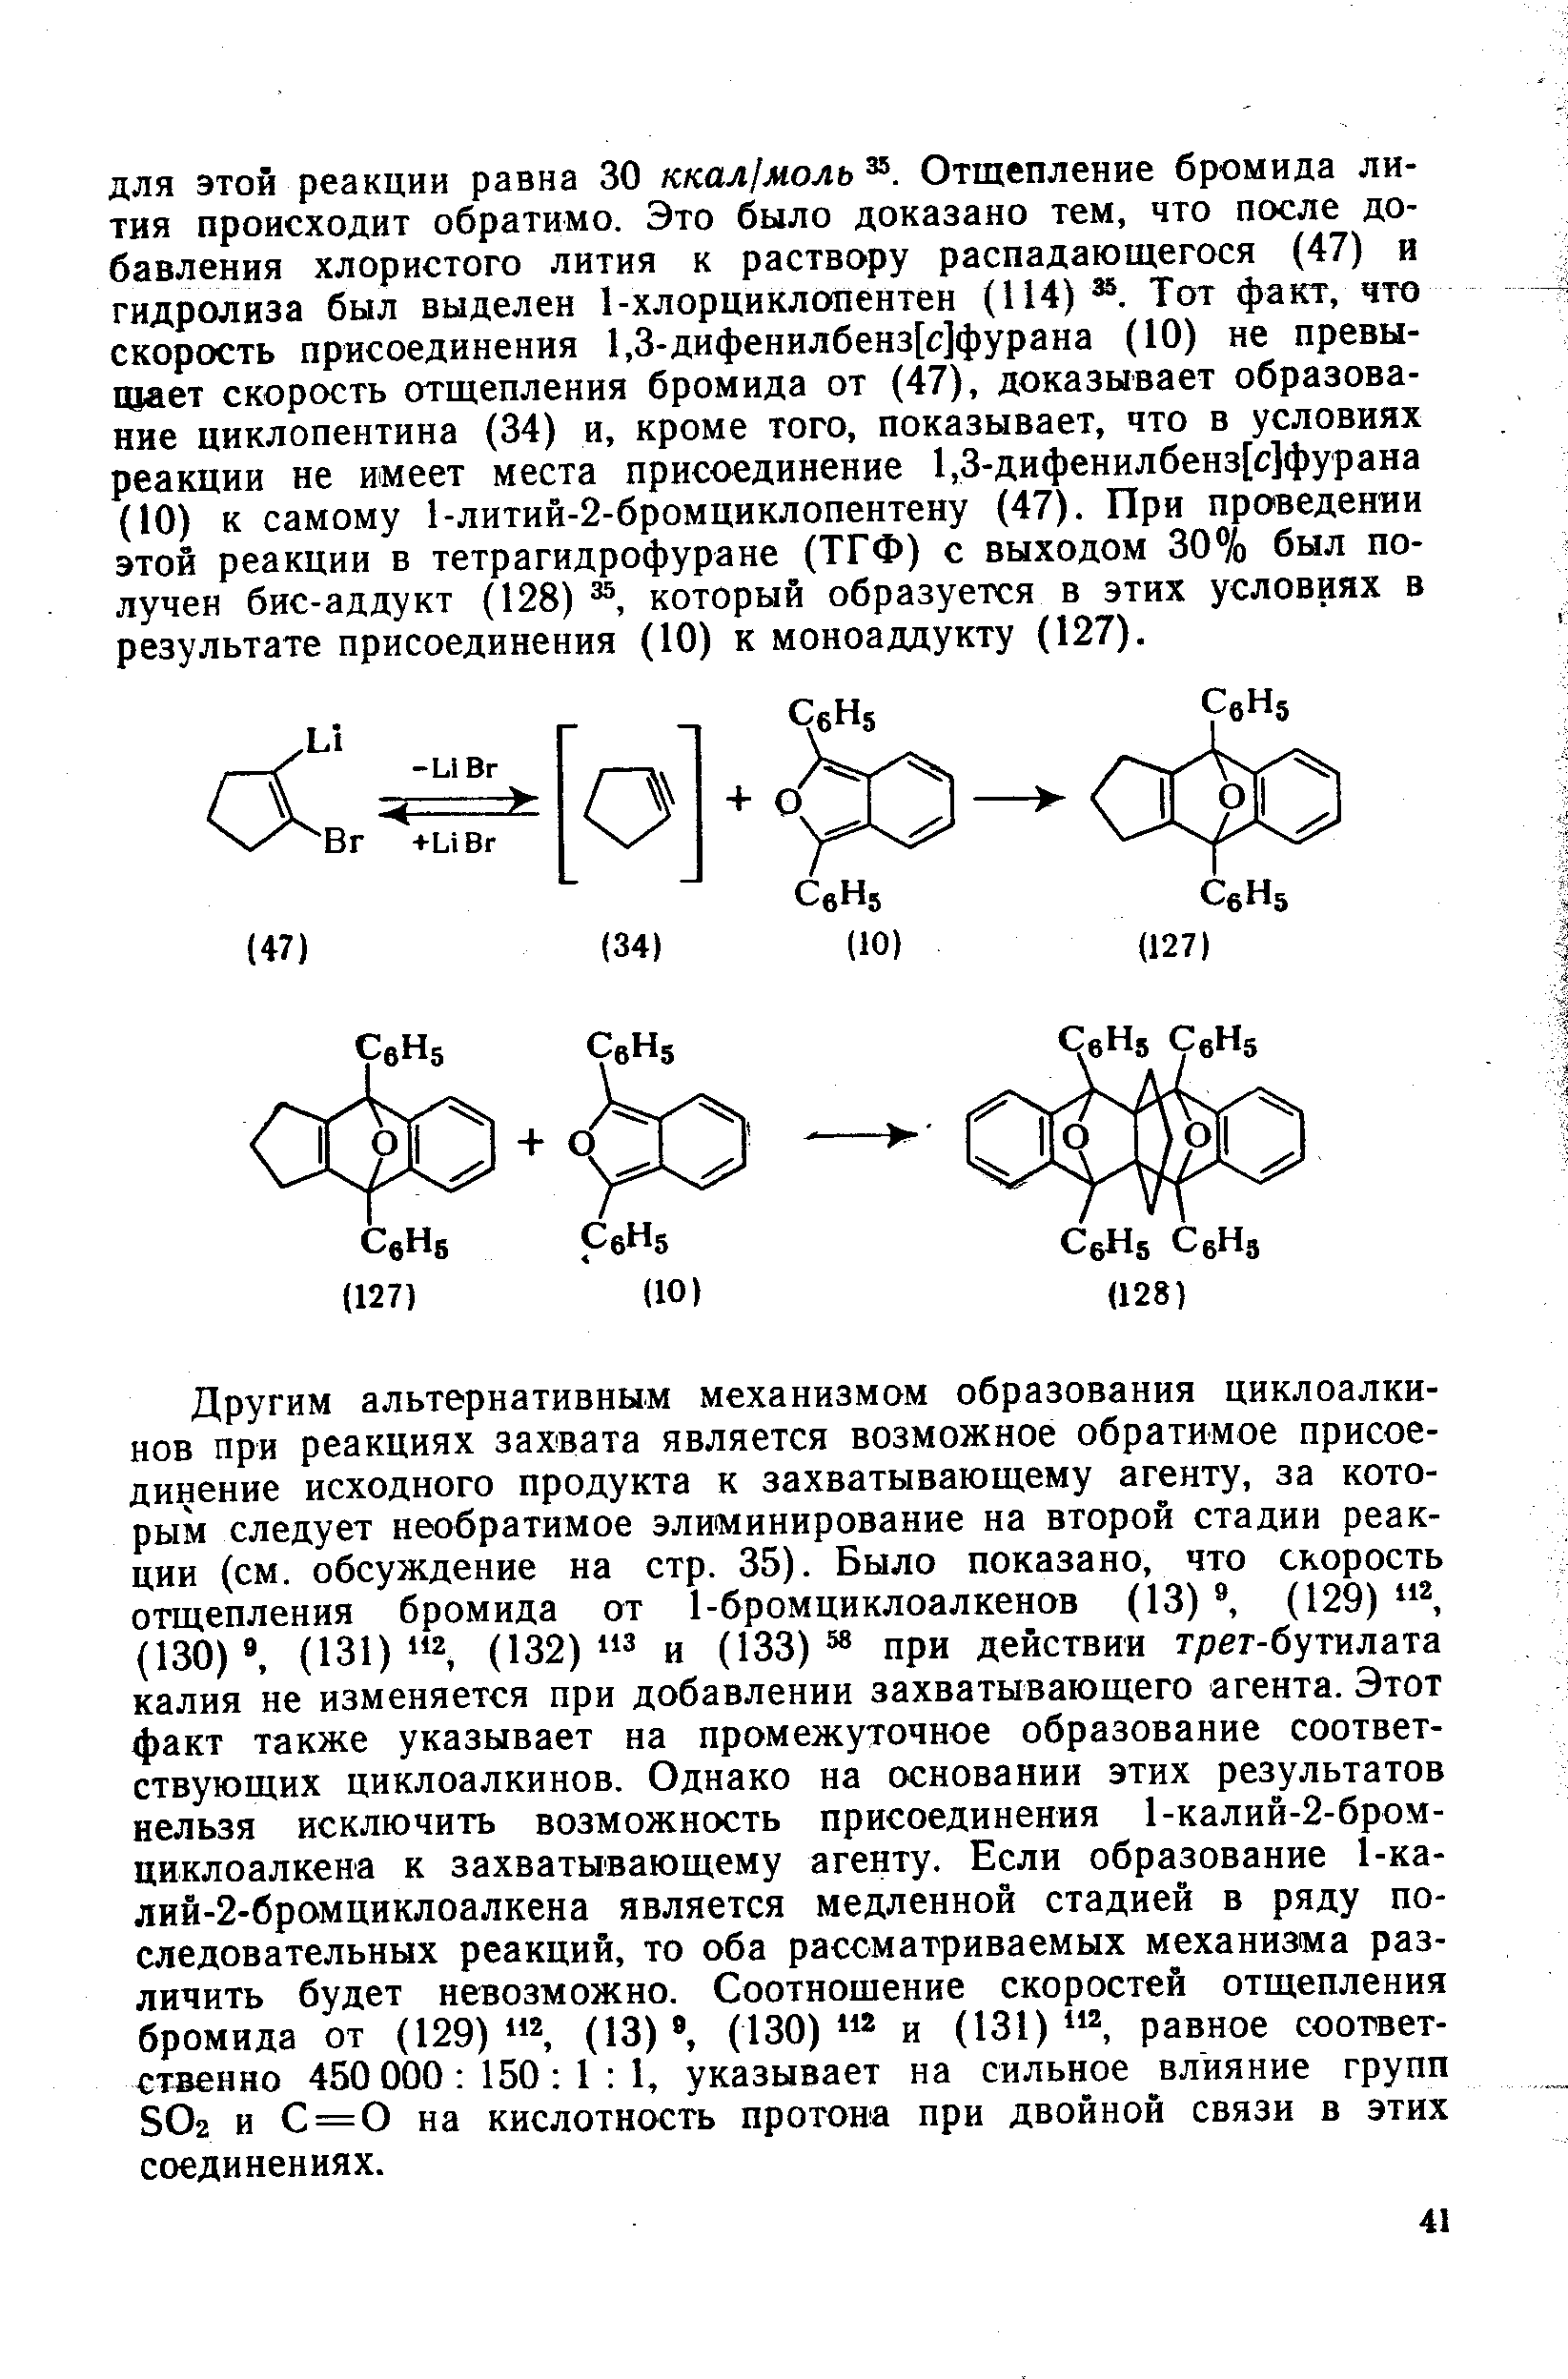 Другим альтернативным механизмом образования циклоалкинов при реакциях захвата является возможное обратимое присоединение исходного продукта к захватывающему агенту, за которым следует необратимое элиминирование на второй стадии реакции (см. обсуждение на стр. 35). Было показано, что скорость отщепления бромида от 1-бромциклоалкенов (13) , (129) (130) , (131) 2 (132) 3 и (133) 58 при действии трет-бутилата калия не изменяется при добавлении захватывающего агента. Этот факт также указывает на промежуточное образование соответствующих циклоалкинов. Однако на основании этих результатов нельзя исключить возможность присоединения 1-калий-2-бром-циклоалкена к захватывающему агенту. Если образование 1-ка-лий-2-бромциклоалкена является медленной стадией в ряду последовательных реакций, то оба рассматриваемых механизма различить будет невозможно. Соотношение скоростей отщепления бромида от (129) (13) , (130) и (131) равное соответственно 450 000 150 I 1, указывает на сильное влияние групп ЗОг и С = 0 на кислотность протона при двойной связи в этих соединениях.